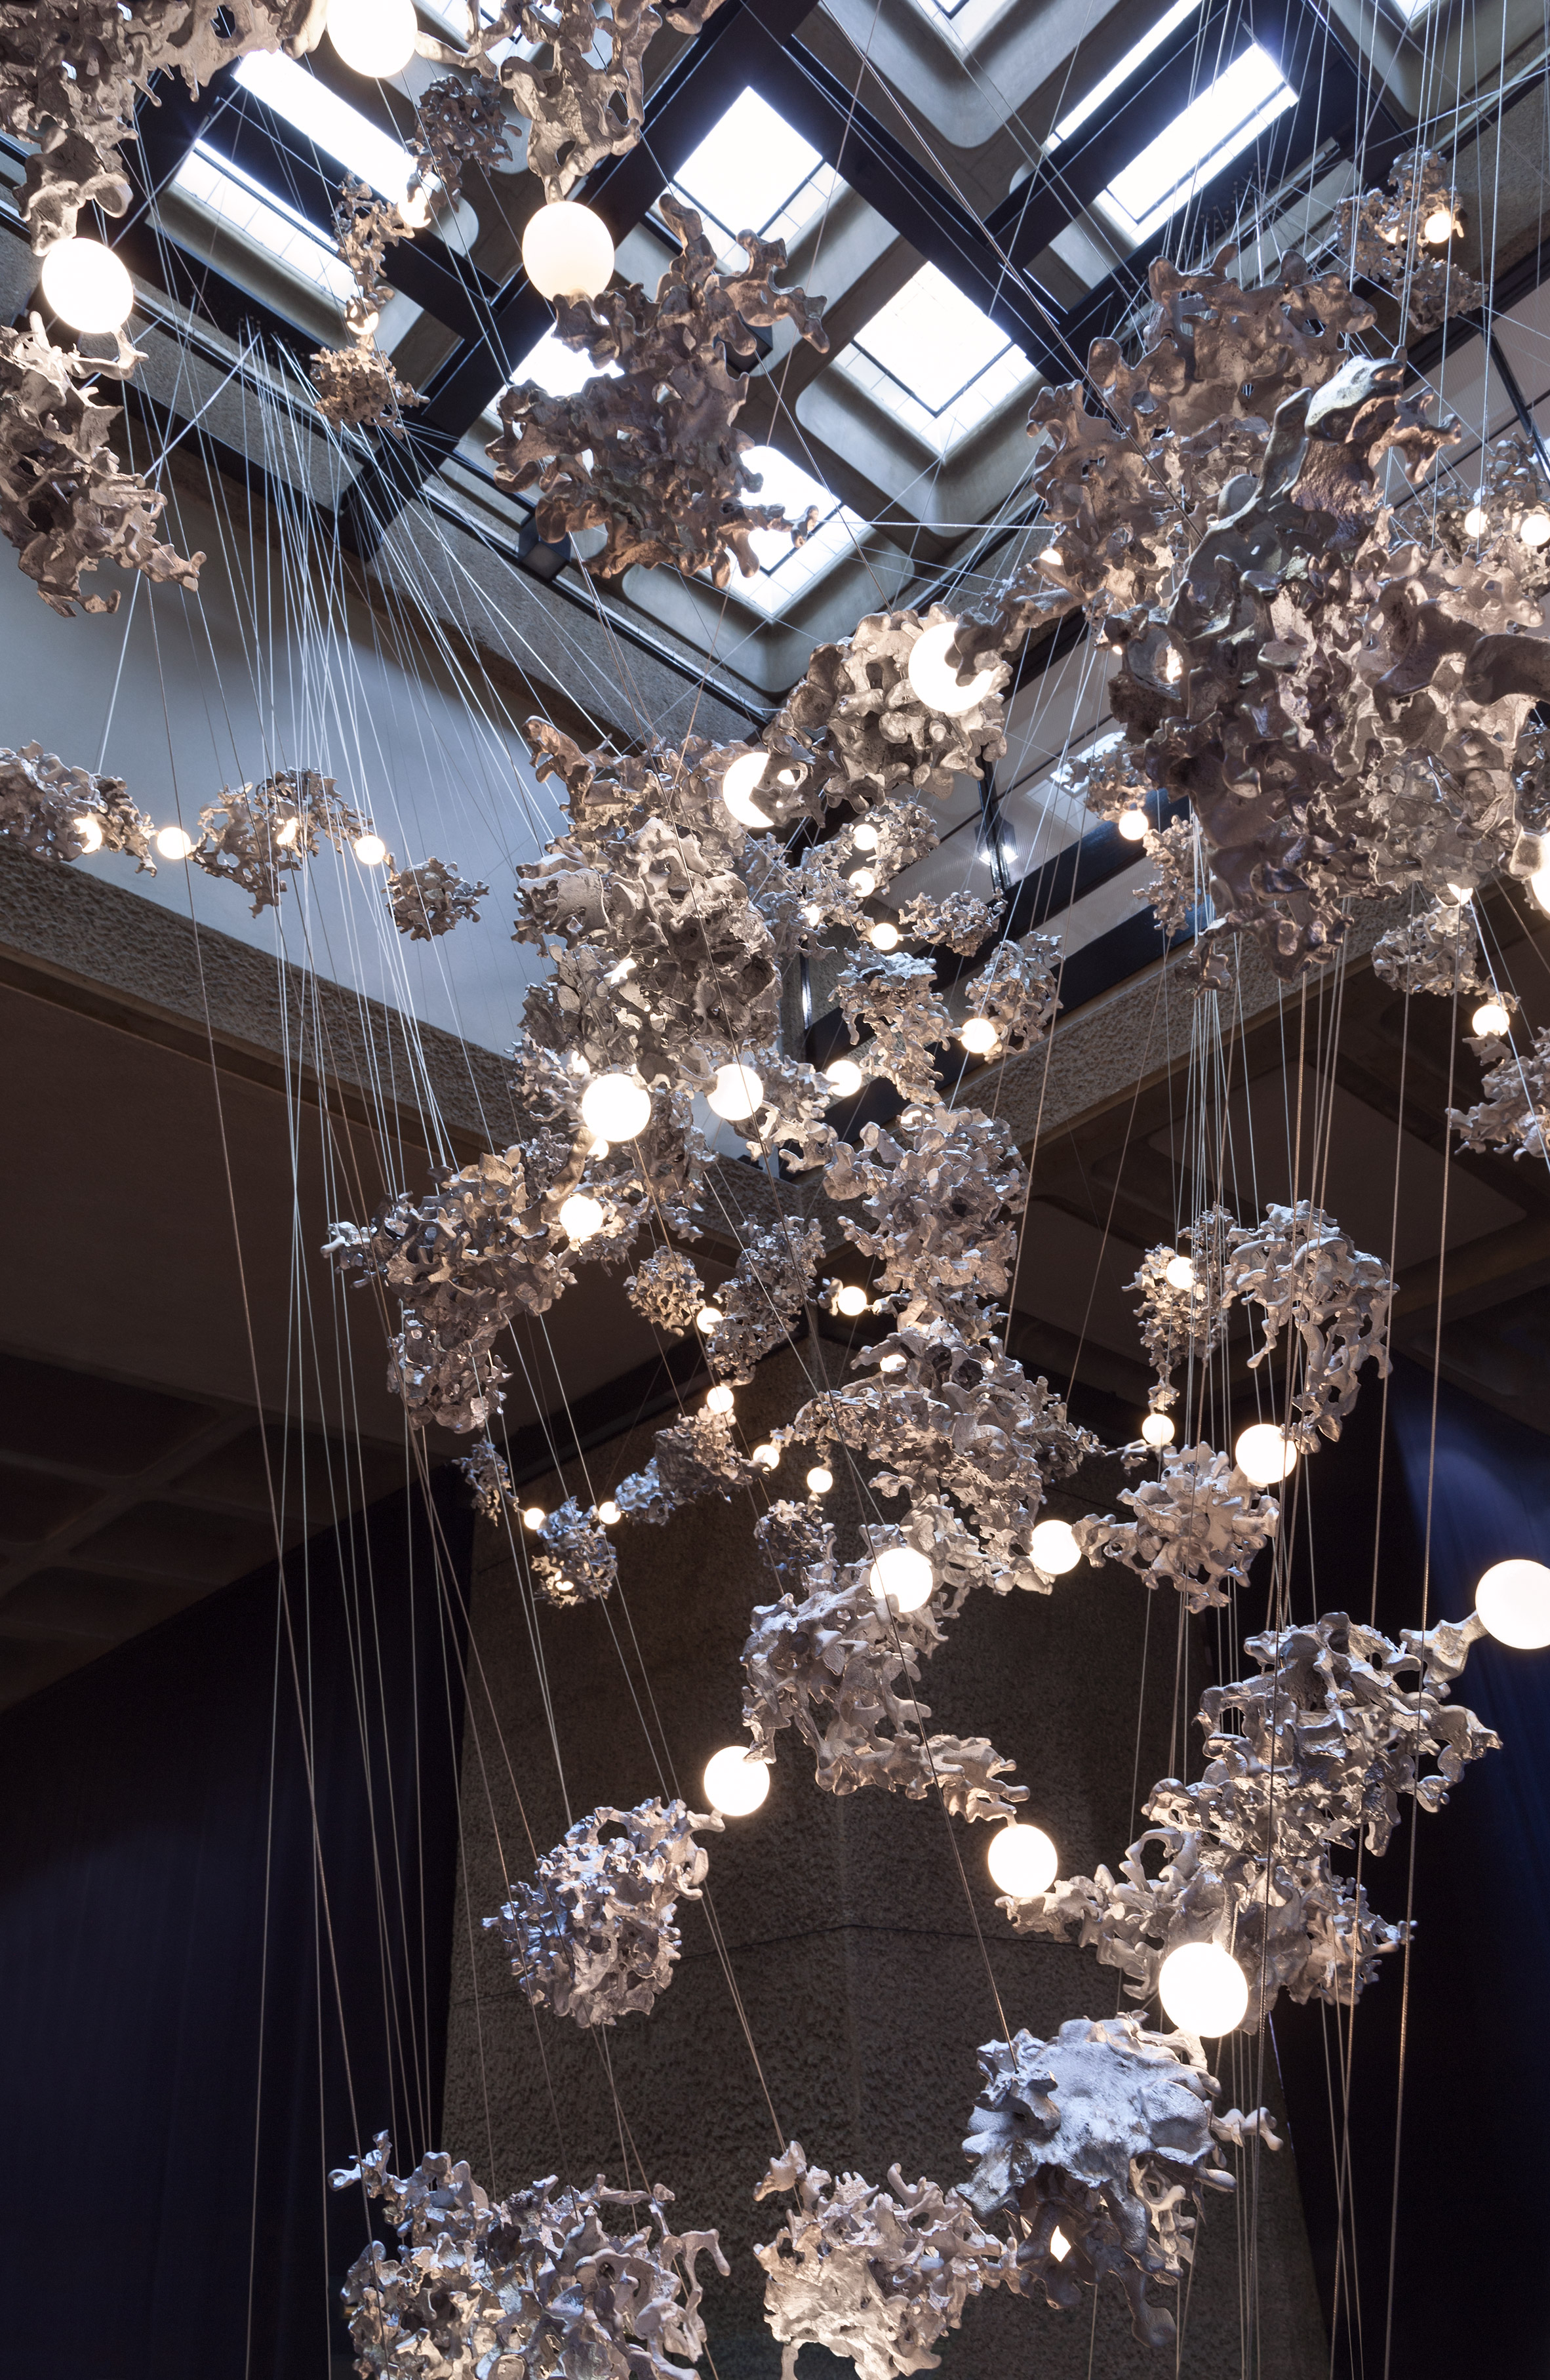 Bocci immersive light installation at the Barbican for London Design Festival 2016